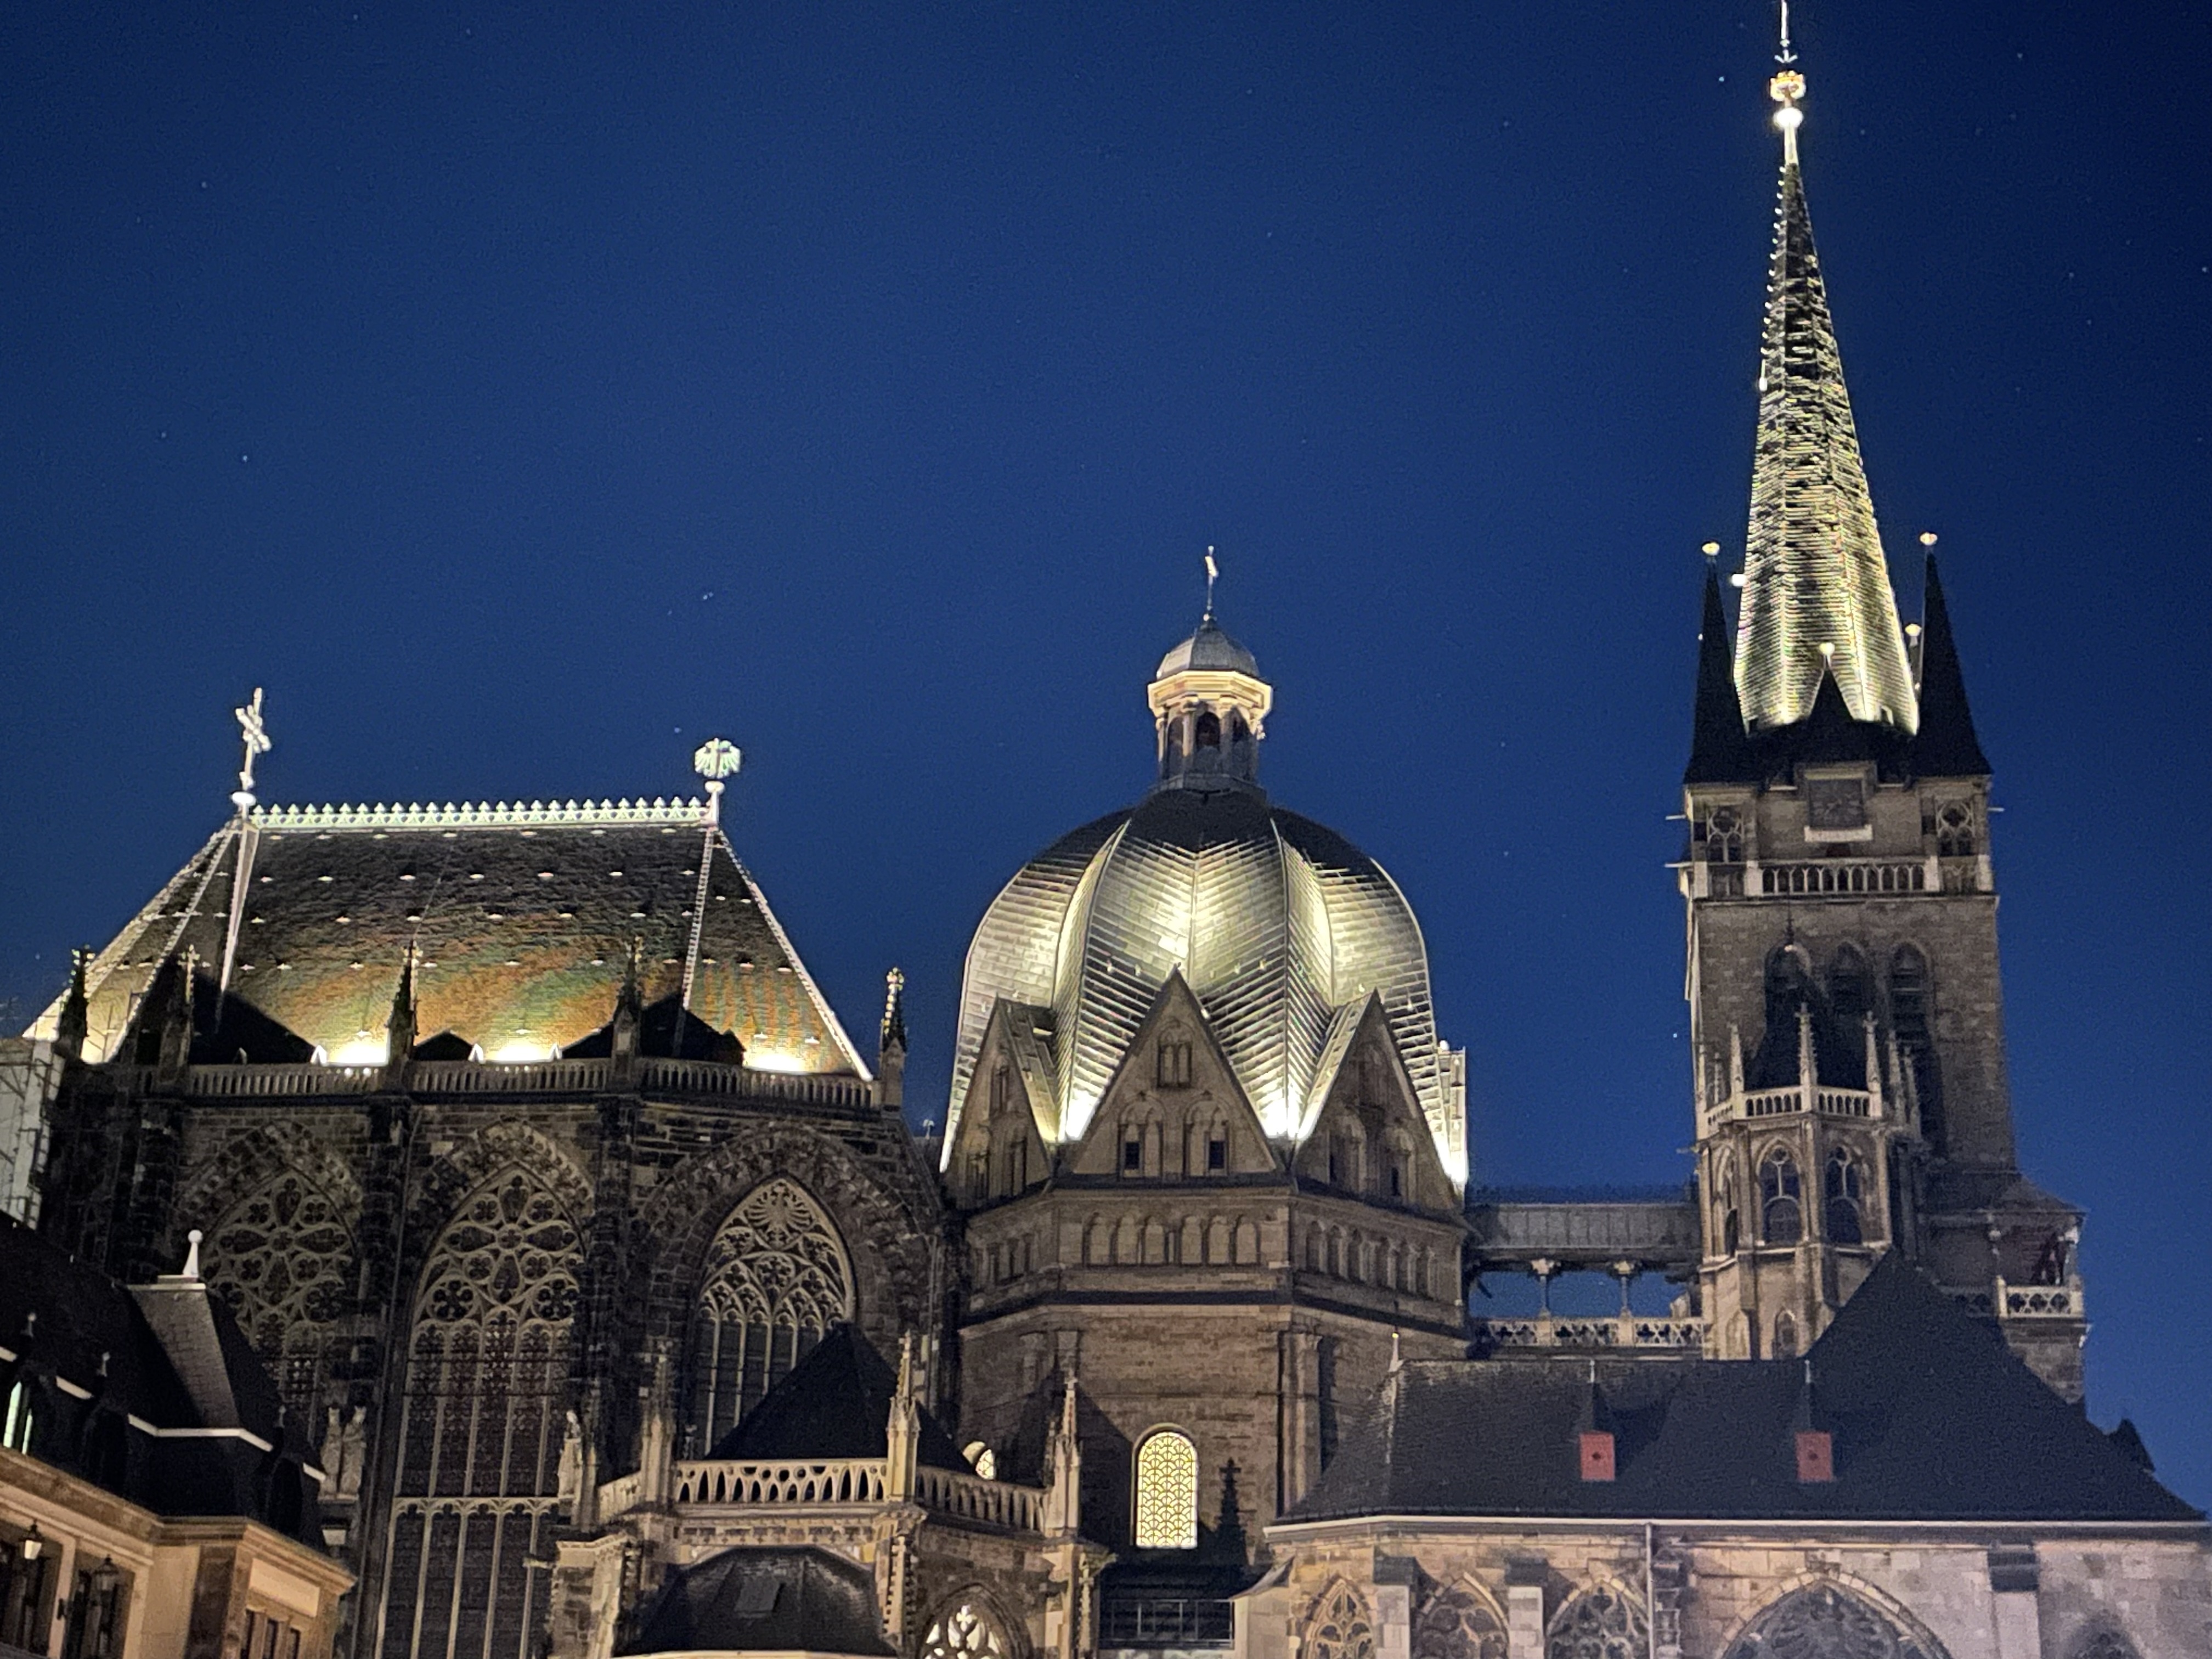 Aachener Dom bei Nacht